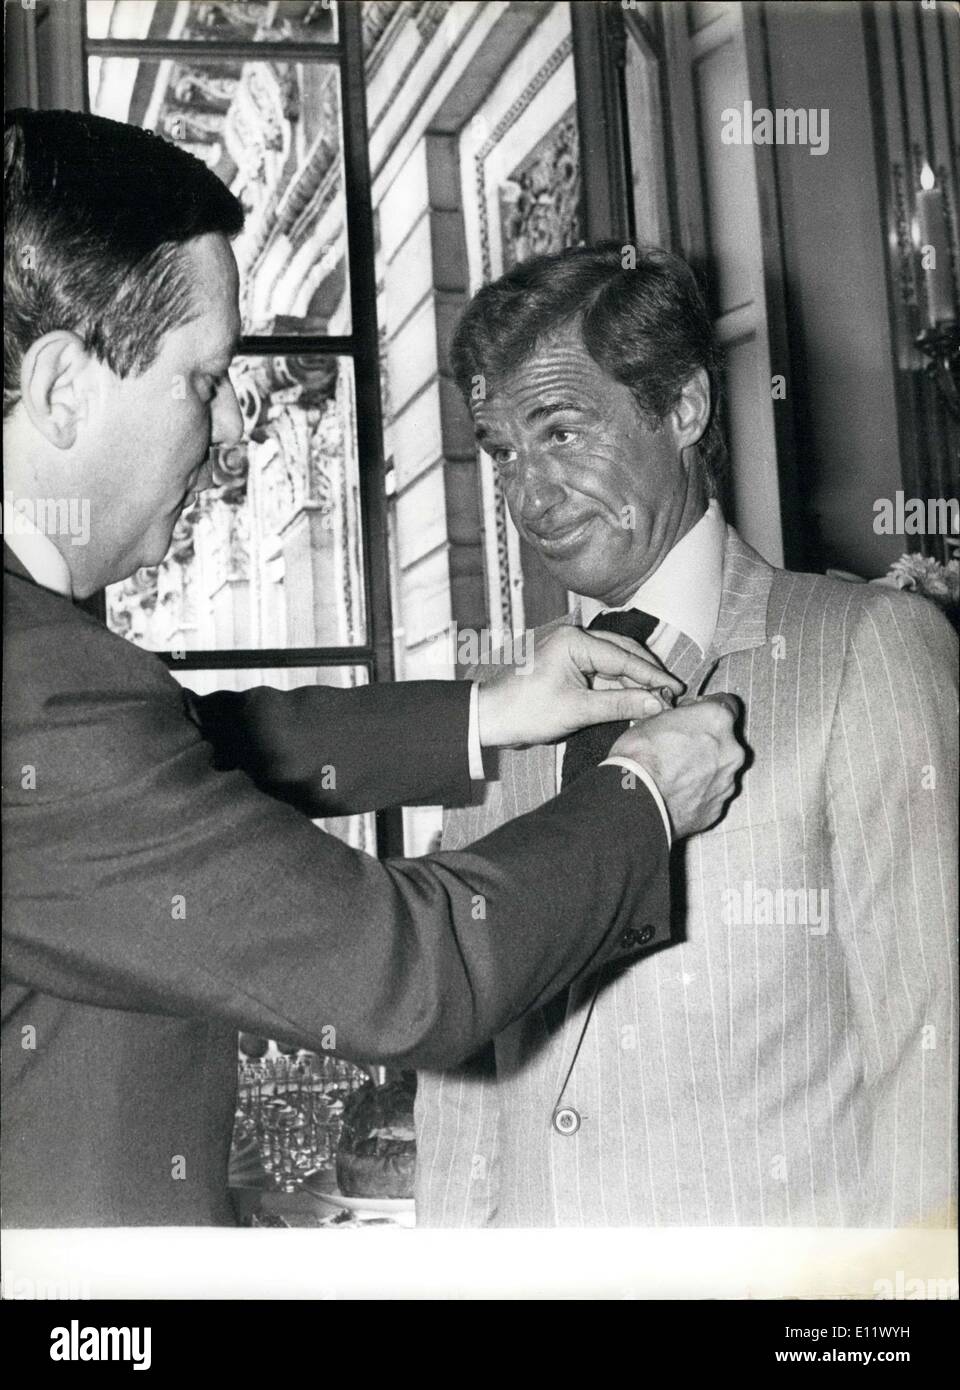 Septembre 24, 1980 - Jean-Paul Belmondo vient de recevoir la Croix de la  Légion d'honneur à Paris de M. Jean-Philippe Lecat, Ministre de la Culture.  C'était une récompense, depuis son talent artistique